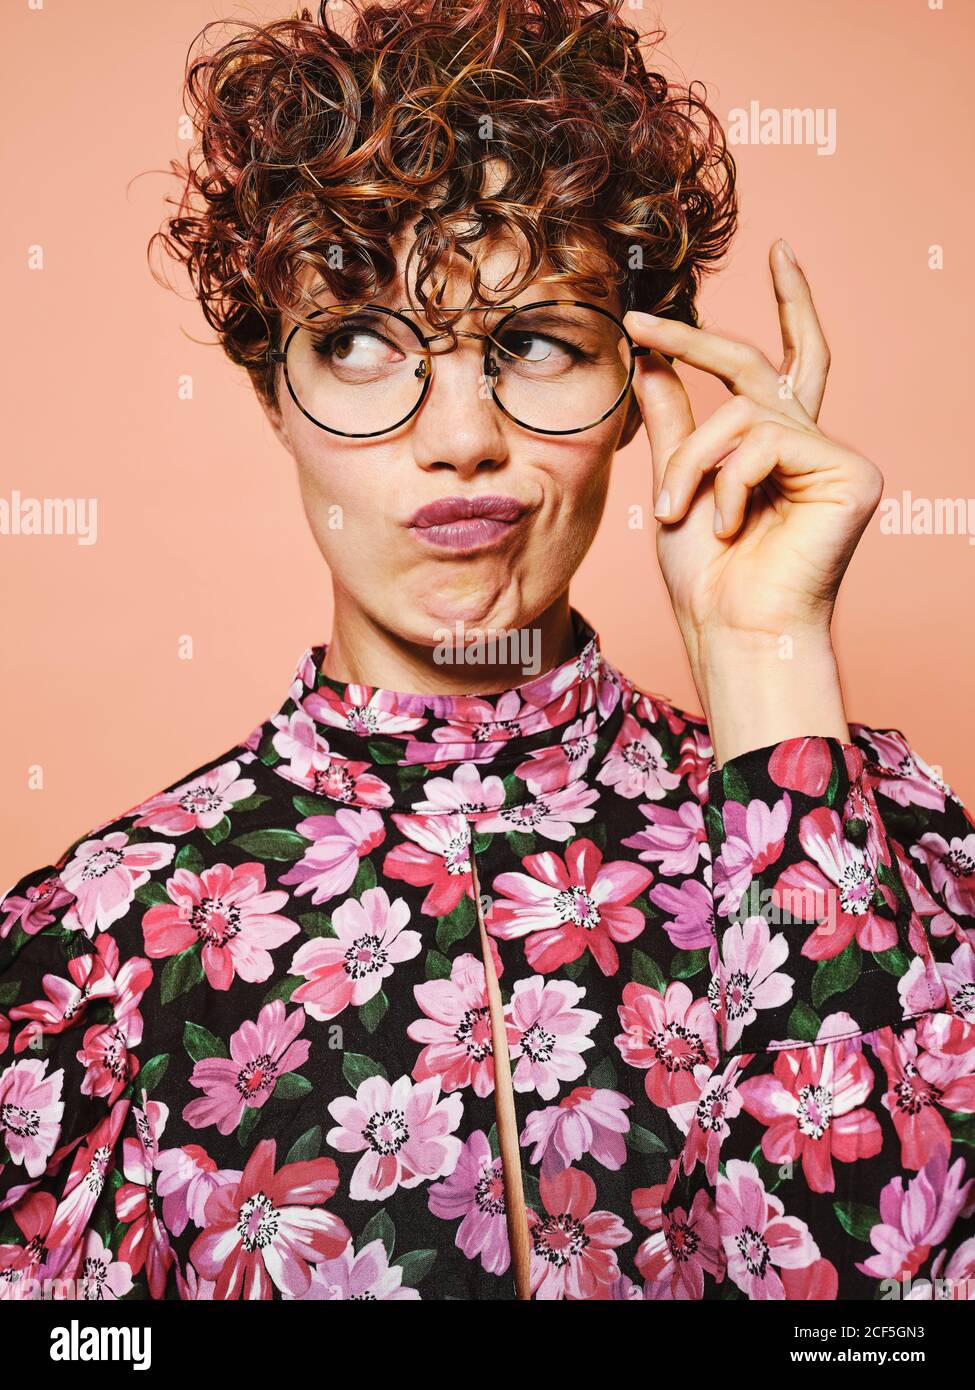 Nachdenklich zweifelhaft schöne lockige behaarte Weibchen in trendigen Brillen und Stylische, farbenfrohe Bluse mit floralem Ornament, das gegen Rosa abblickt Hintergrund Stockfoto